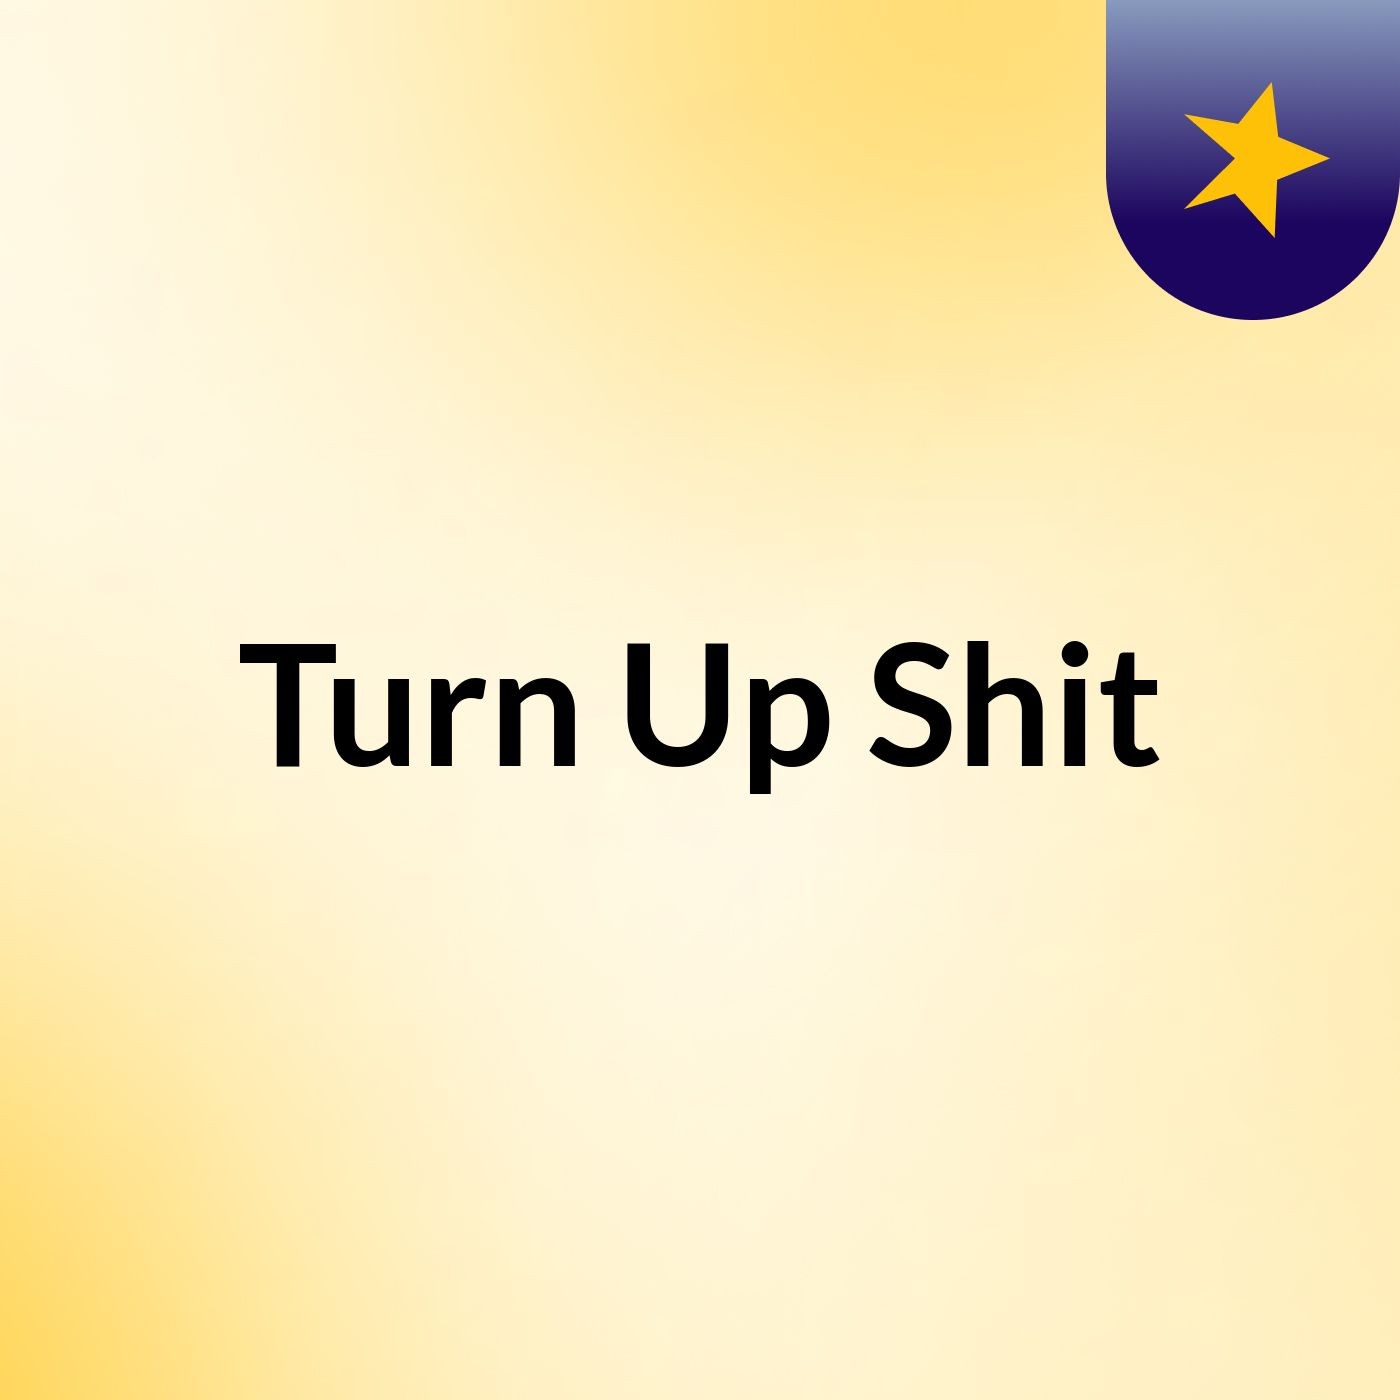 Turn Up Shit